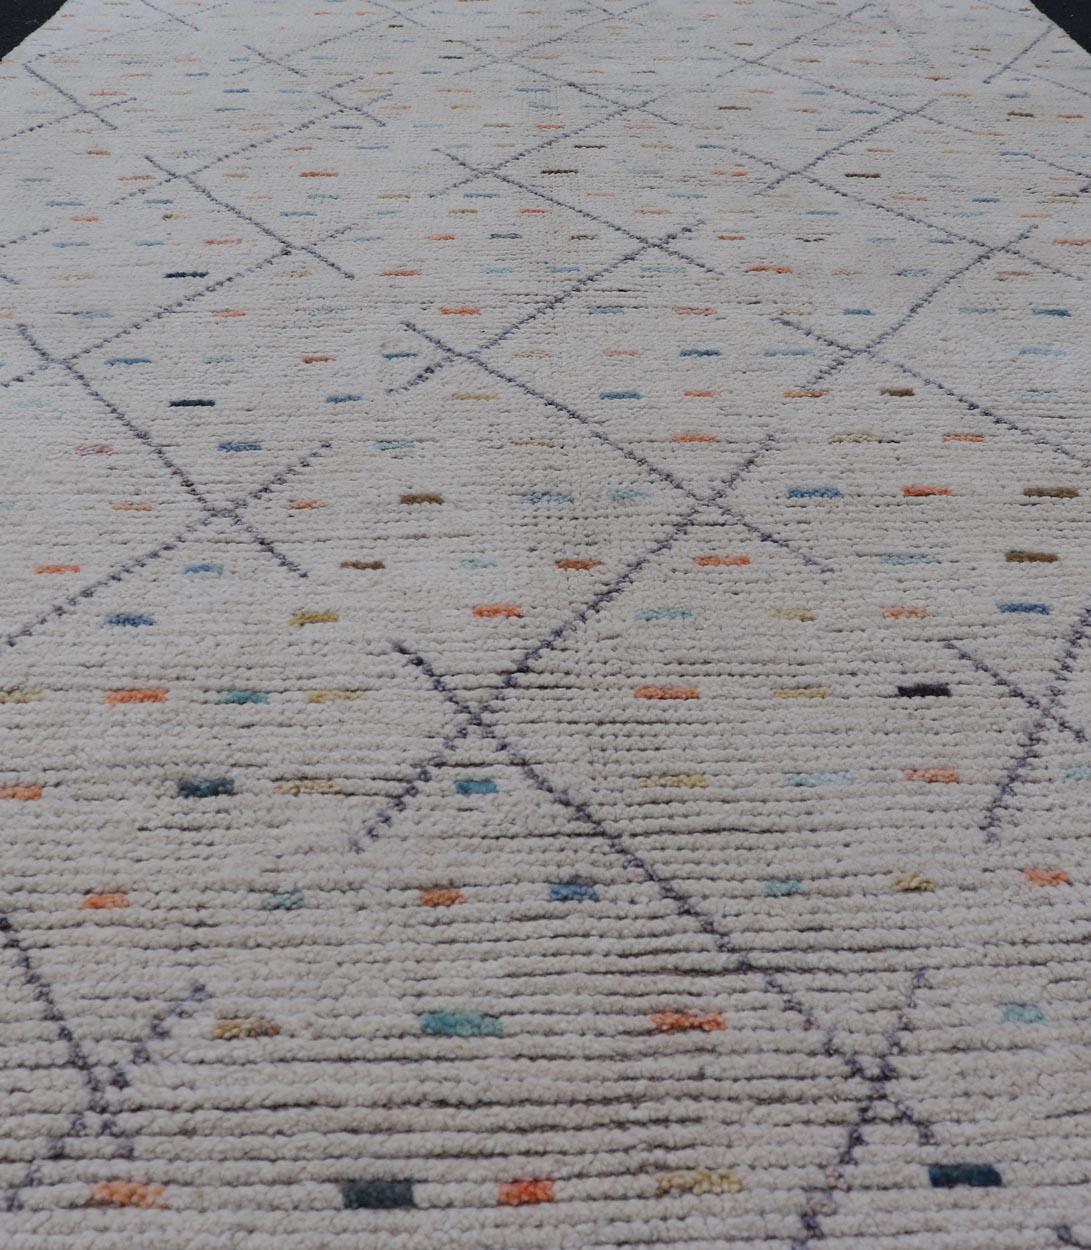 Moderner Stammesteppich aus Wolle mit subgeometrischem Design von Keivan Woven Arts.  Teppich MSE-12905, Keivan Woven Arts / Herkunftsland / Art: Afghanistan / Modern Casual, etwa Anfang des 21. Jahrhunderts.
Maße: 4'11 x 8'7 
Dieser moderne,